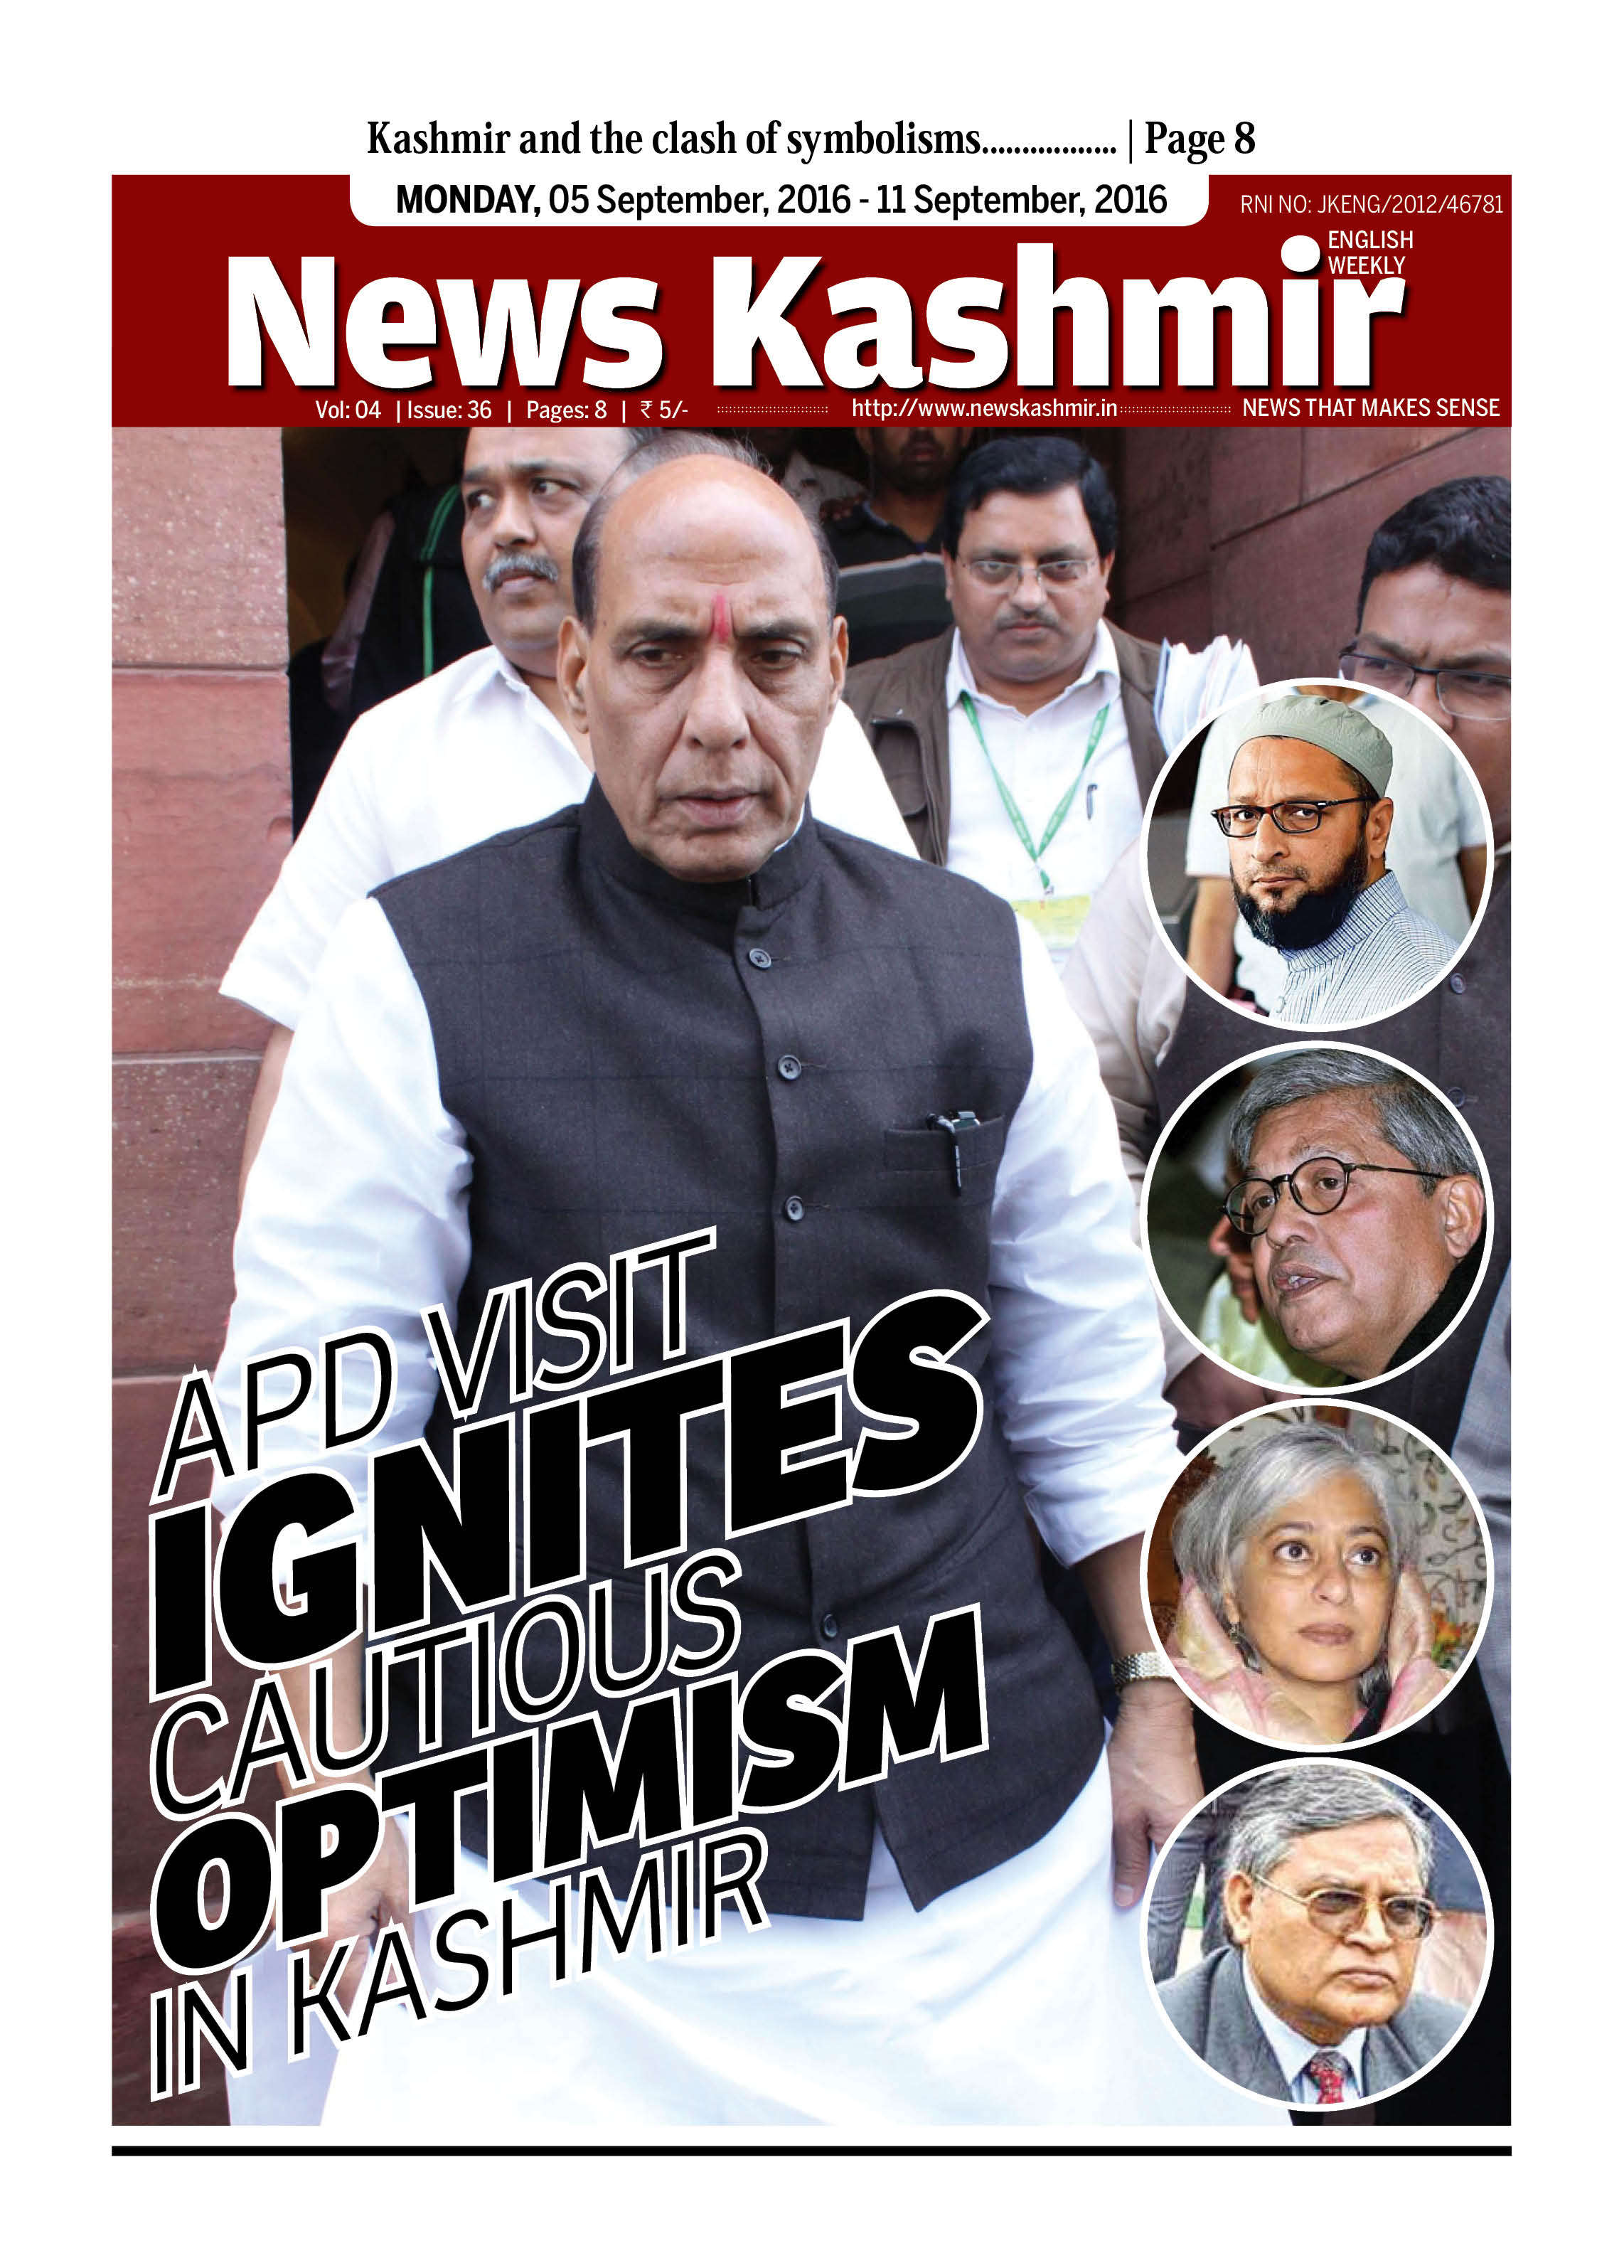 APD Visit Ignites Cautious optimism in Kashmir